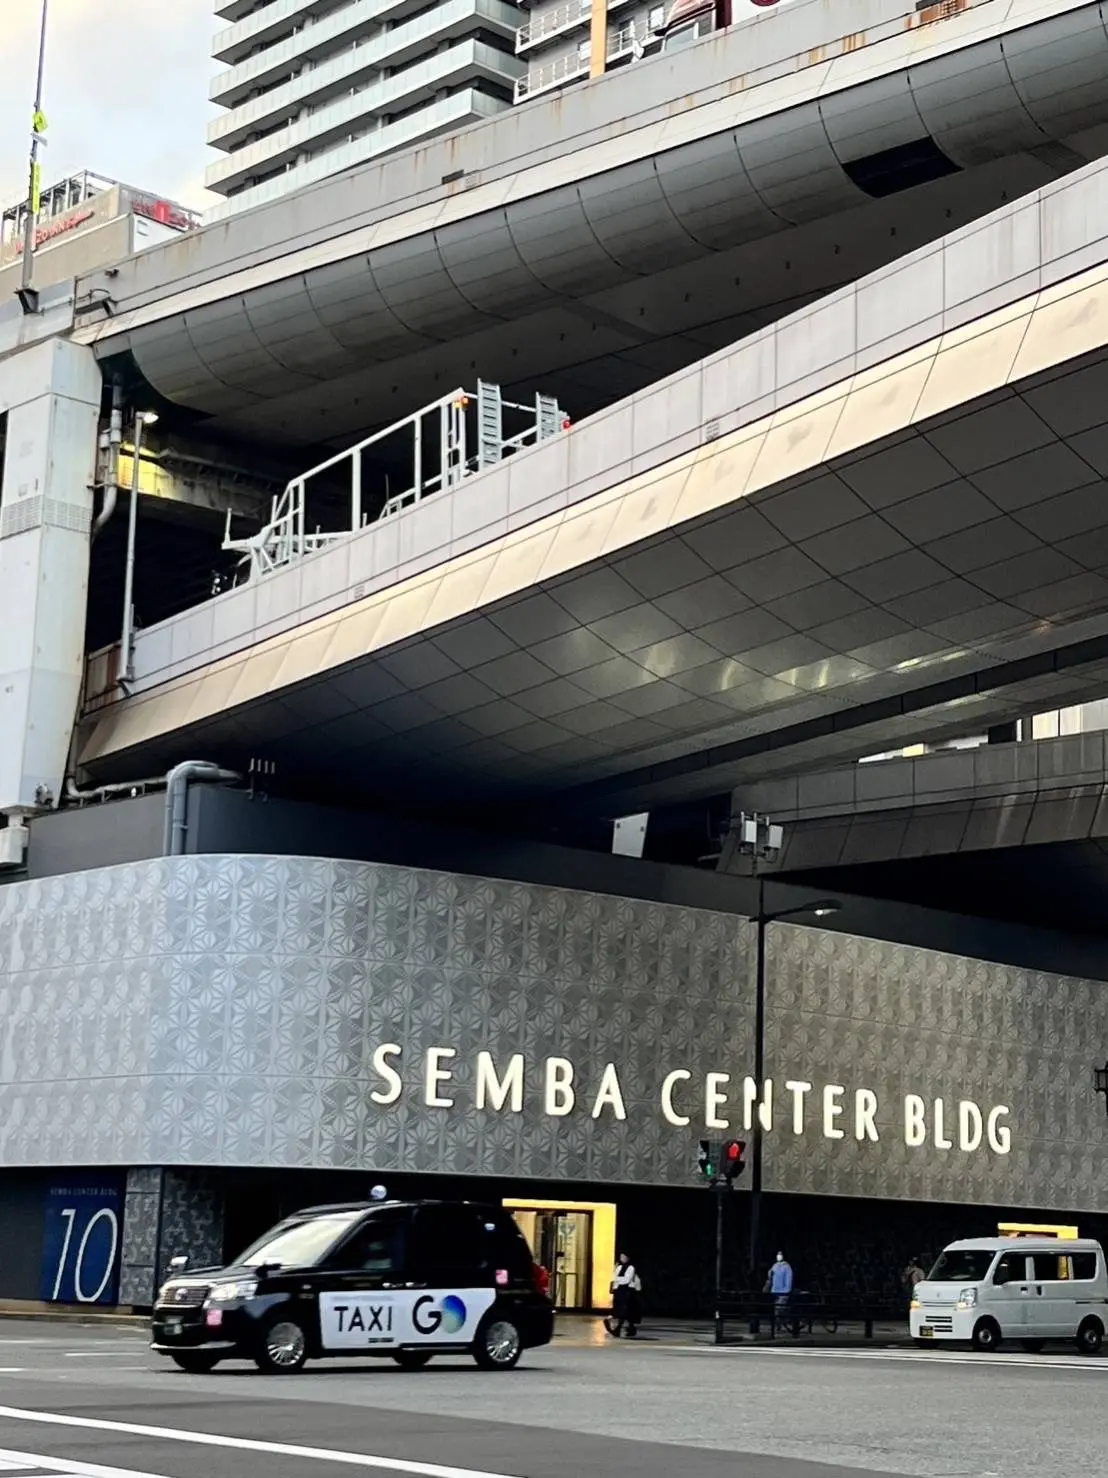 船場センタービル。東西約1000ｍに約800店が並ぶ全天候型の散歩道。繊維とファッションとグルメの街。
ビルの屋上には阪神高速っが通り、地下には大阪メトロ中央線が通っています。